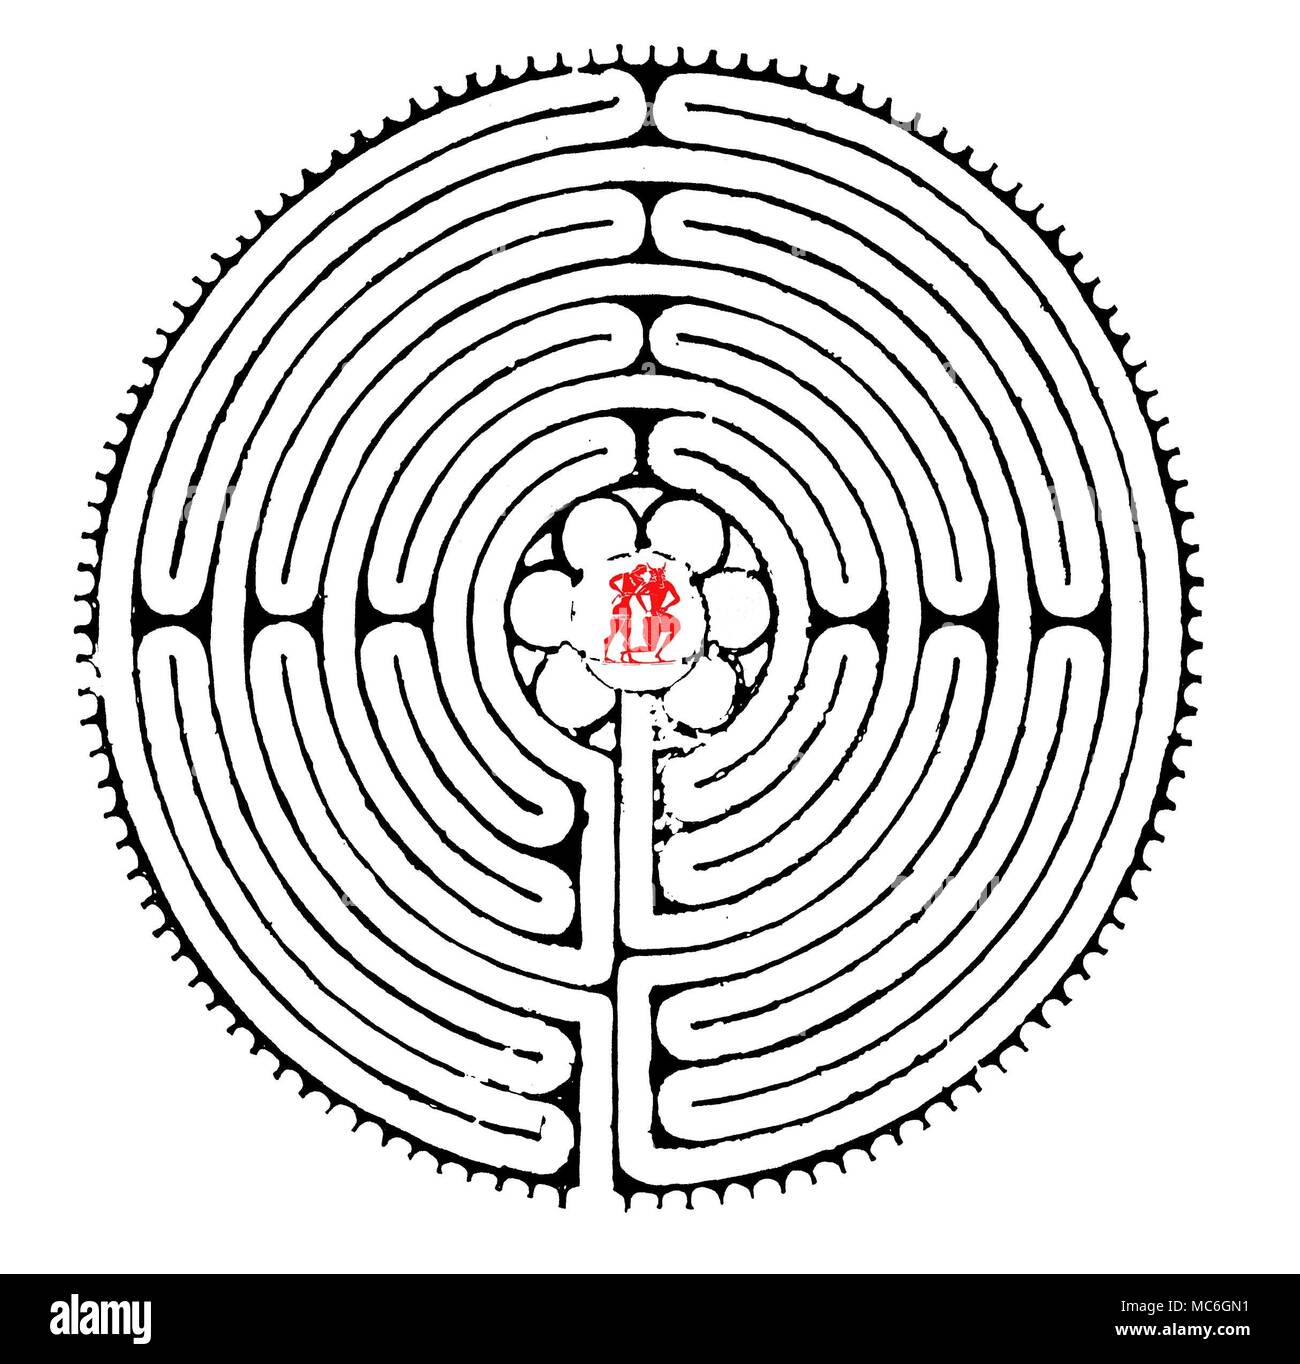 Labyrinthe - chartres im dreizehnten Jahrhundert Labyrinth im Kirchenschiff, die Kathedrale von Chartres ist wohl die berühmteste der Welt - aber, es ist nicht ein reiner Labyrinth, so viel wie eine tanzende Masse. Nachdem Sie auf seinem Weg eingeschlagen, gibt es keine Chance, verloren: Der Pfad führt unweigerlich zum inneren Kreis, worin (wenn alte Aufzeichnungen geglaubt werden sollen) Es war das Bild des Theseus im Kampf mit dem Minotaurus. Die genaue Form Dieser Tauromachia ist unbekannt, aber es kann das Bild auf dieser Plan des Chartres Labyrinth überlagerte Geähnelt haben. Stockfoto